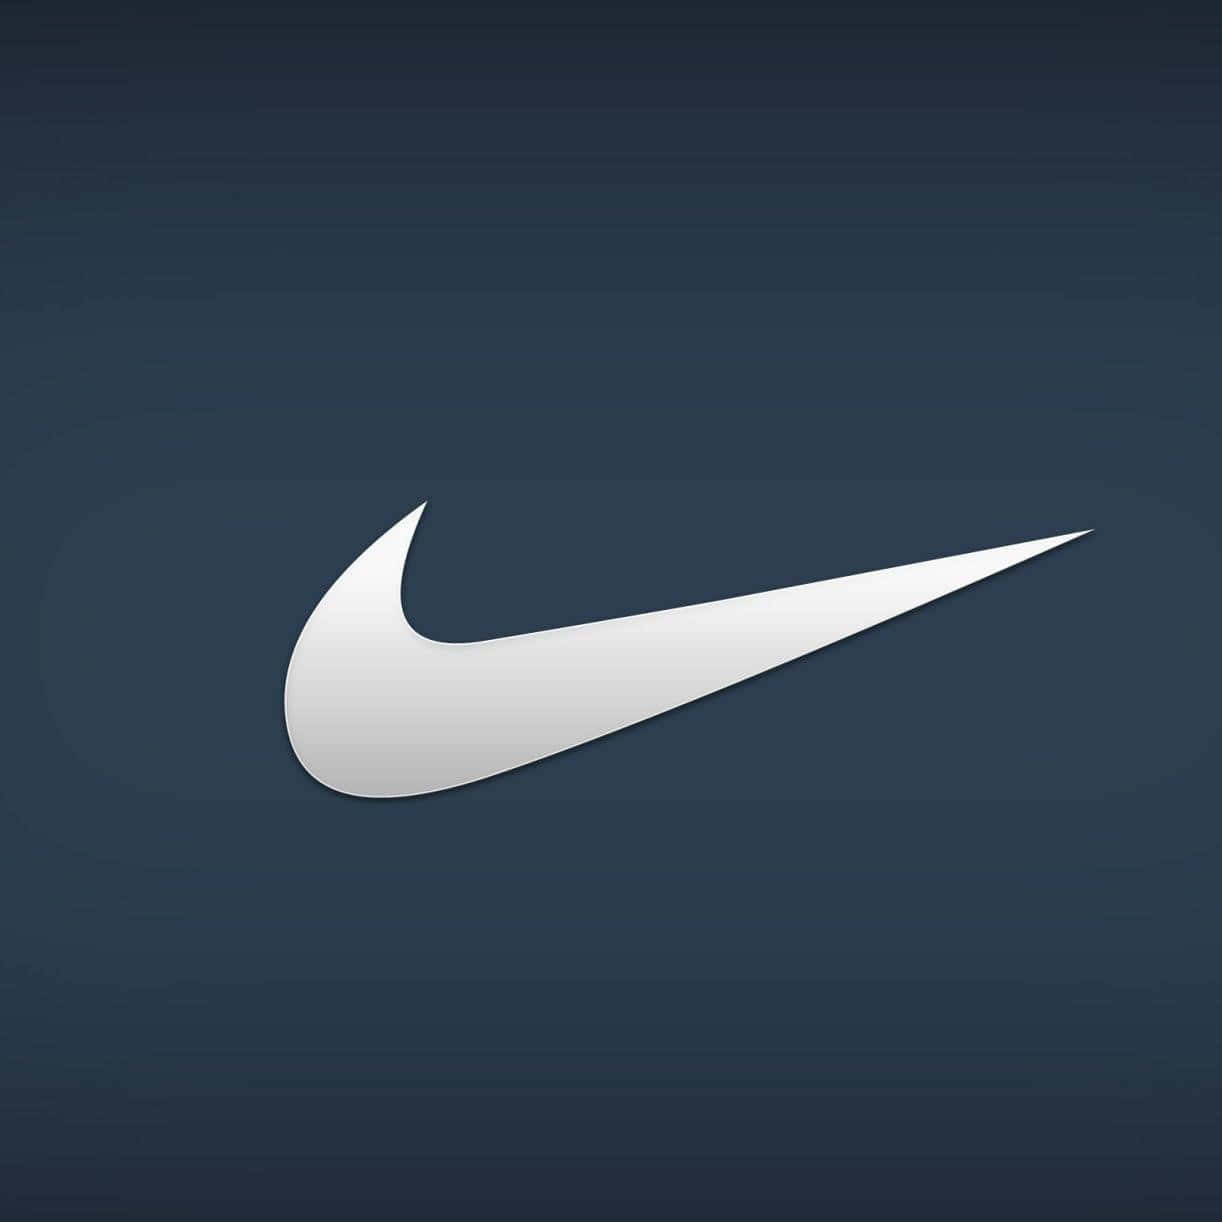 Logotypenför Nike Med Den Ikoniska Svängen I Klarblått. Wallpaper